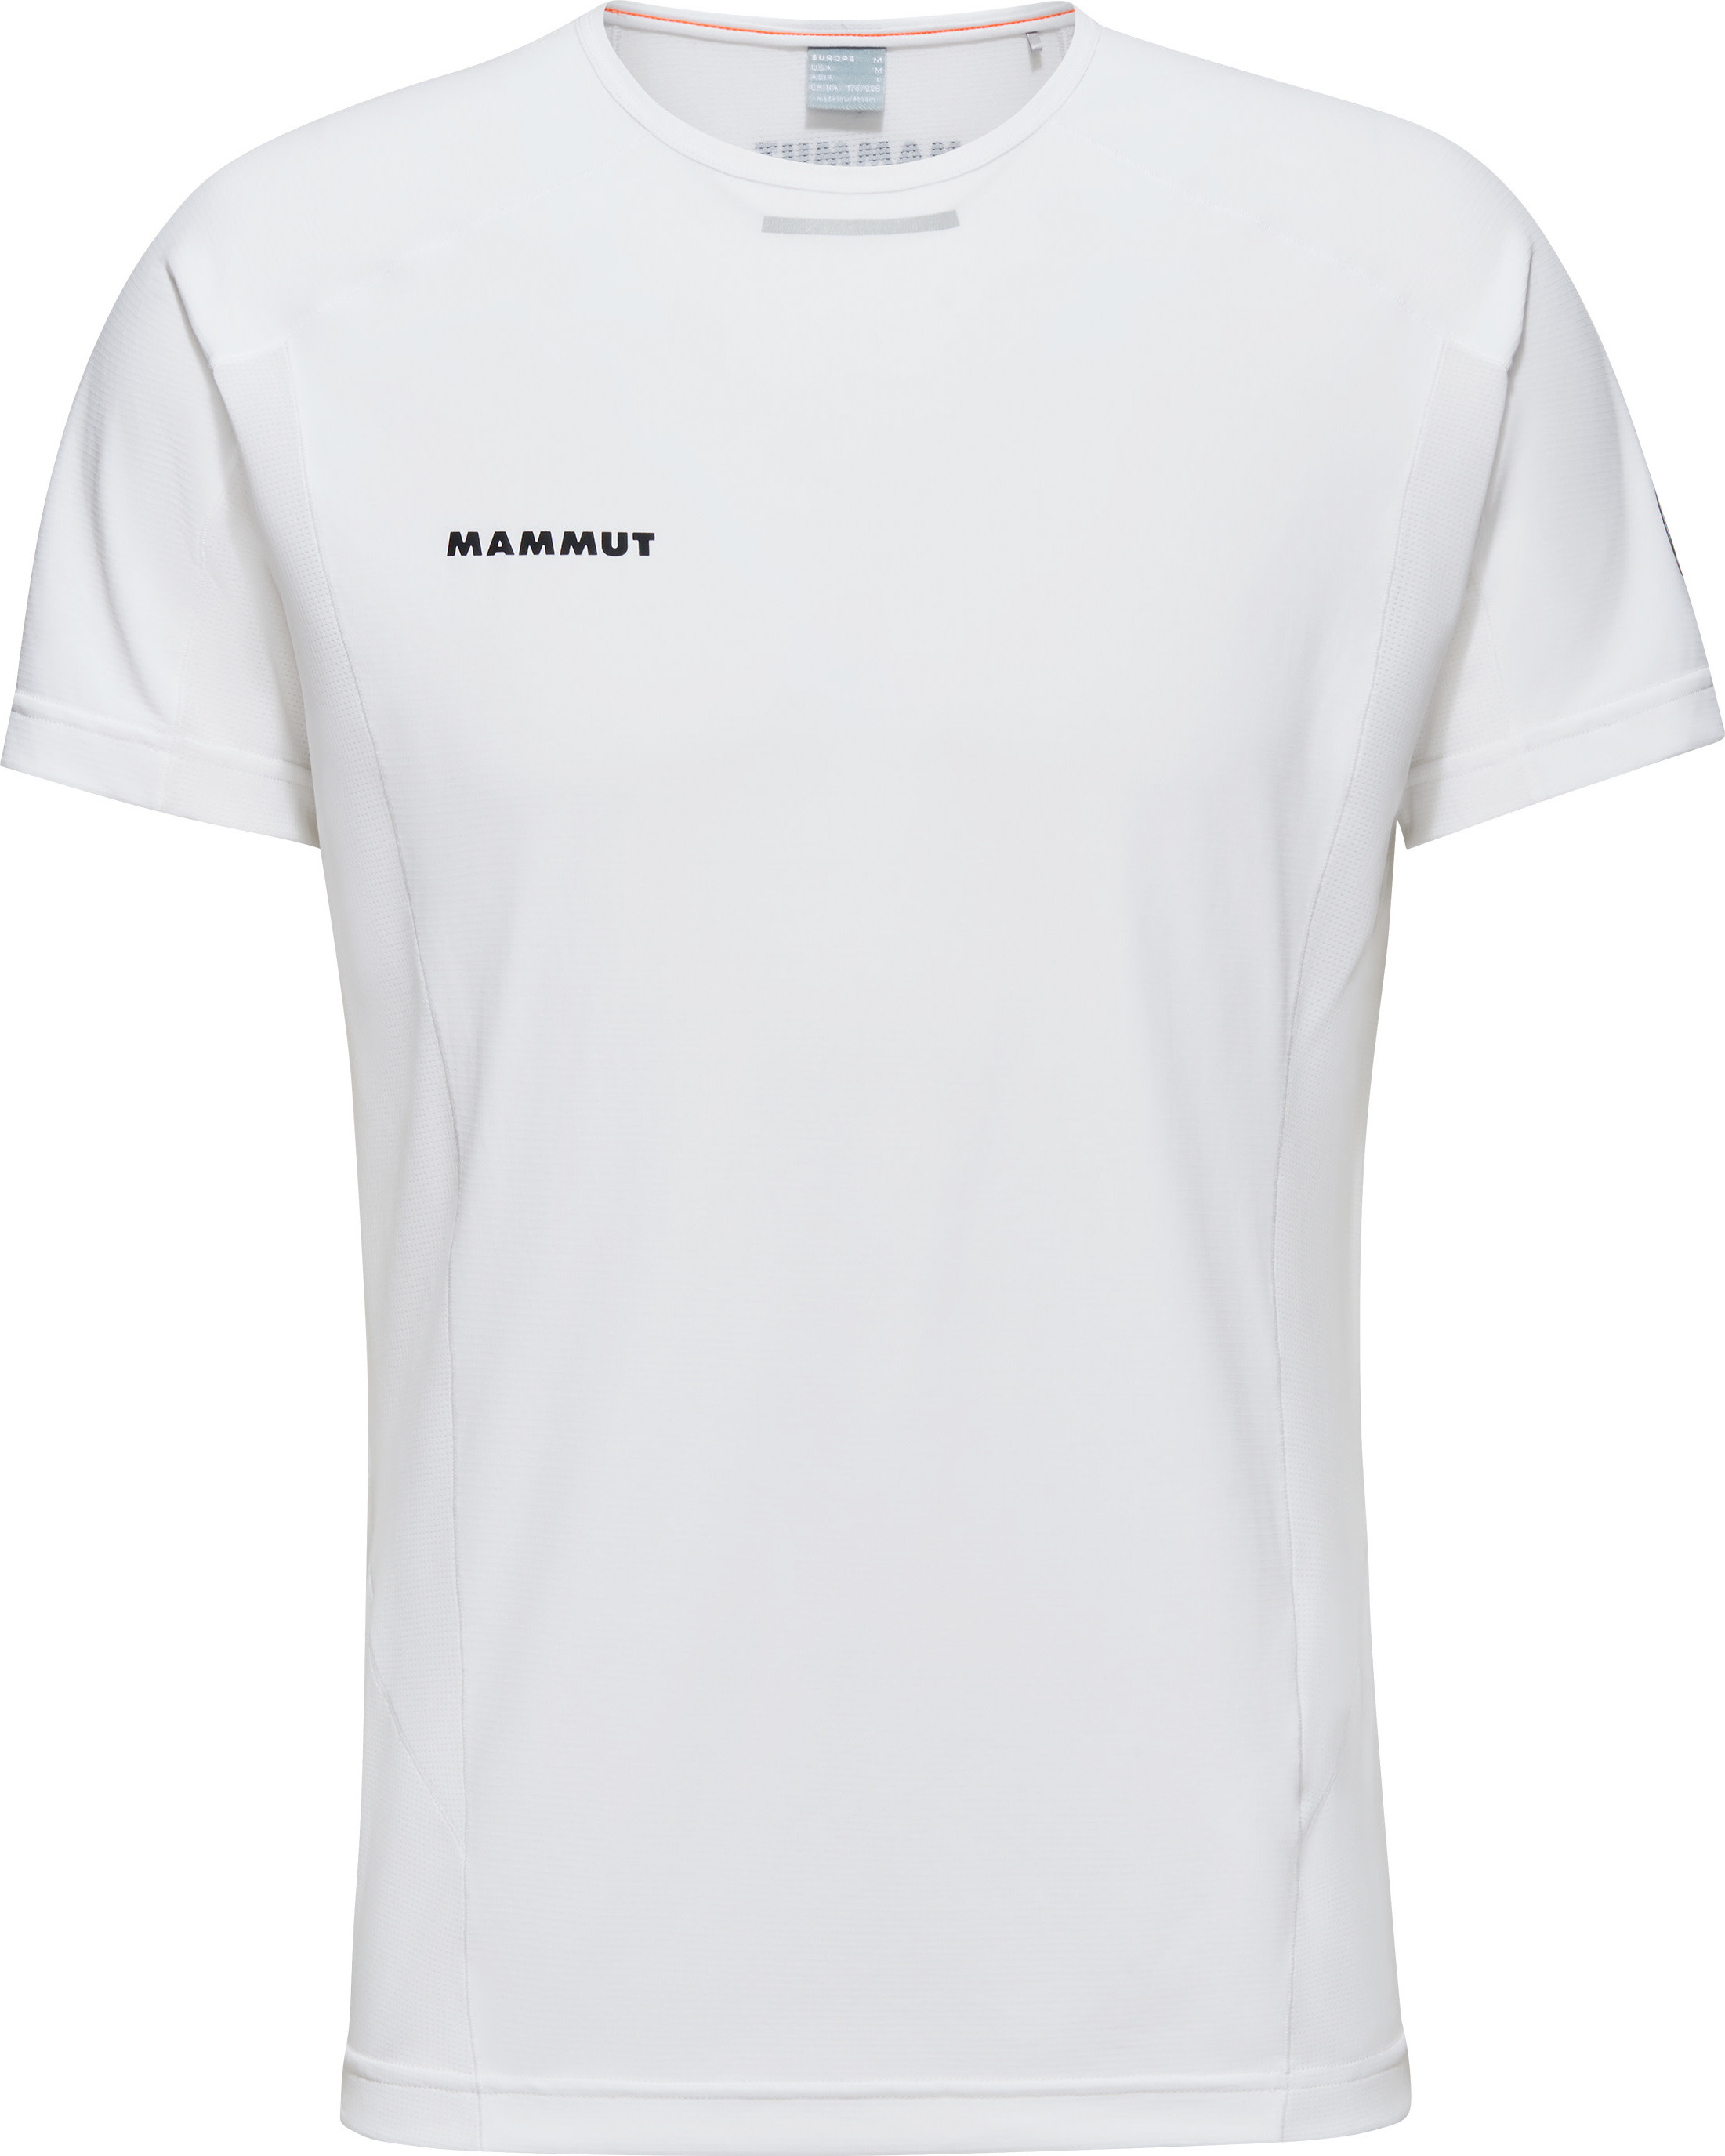 Mammut Men’s Aenergy FL T-Shirt White